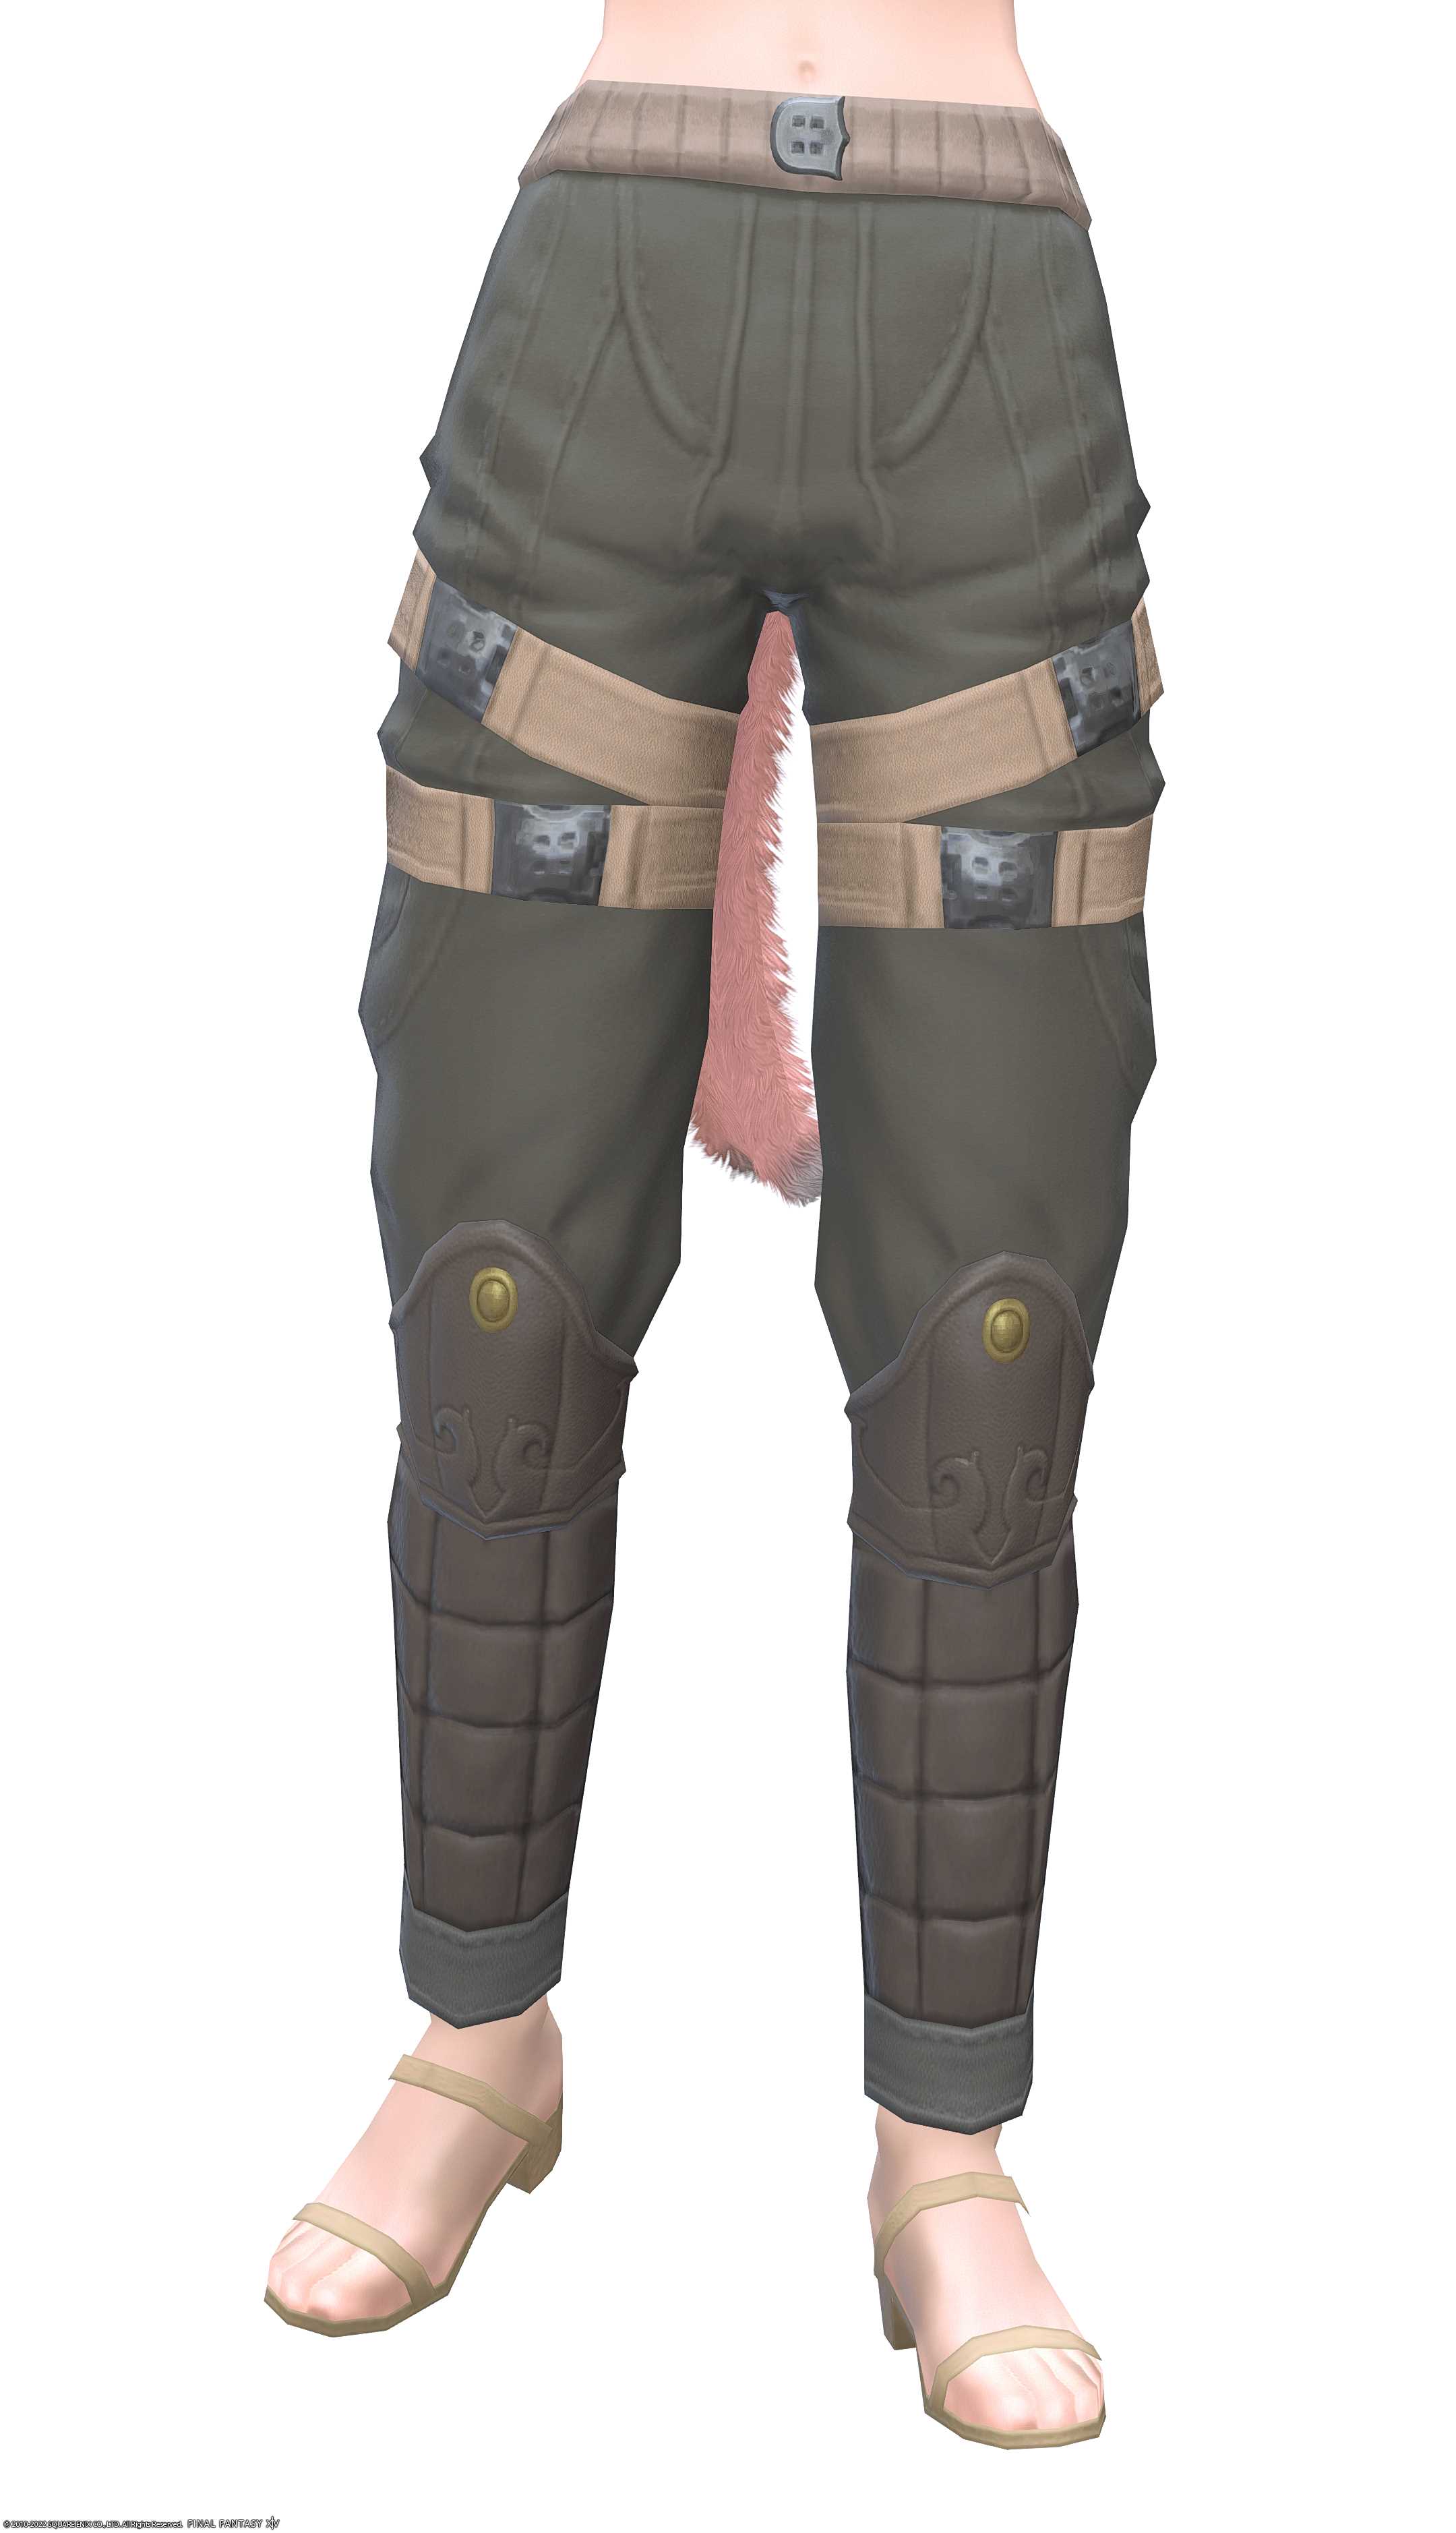 ボランティア・スカウトトラウザー | FF14ミラプリ - Royal Volunteer's Trousers of Scouting - 脚鎧/パンツ/スキニー